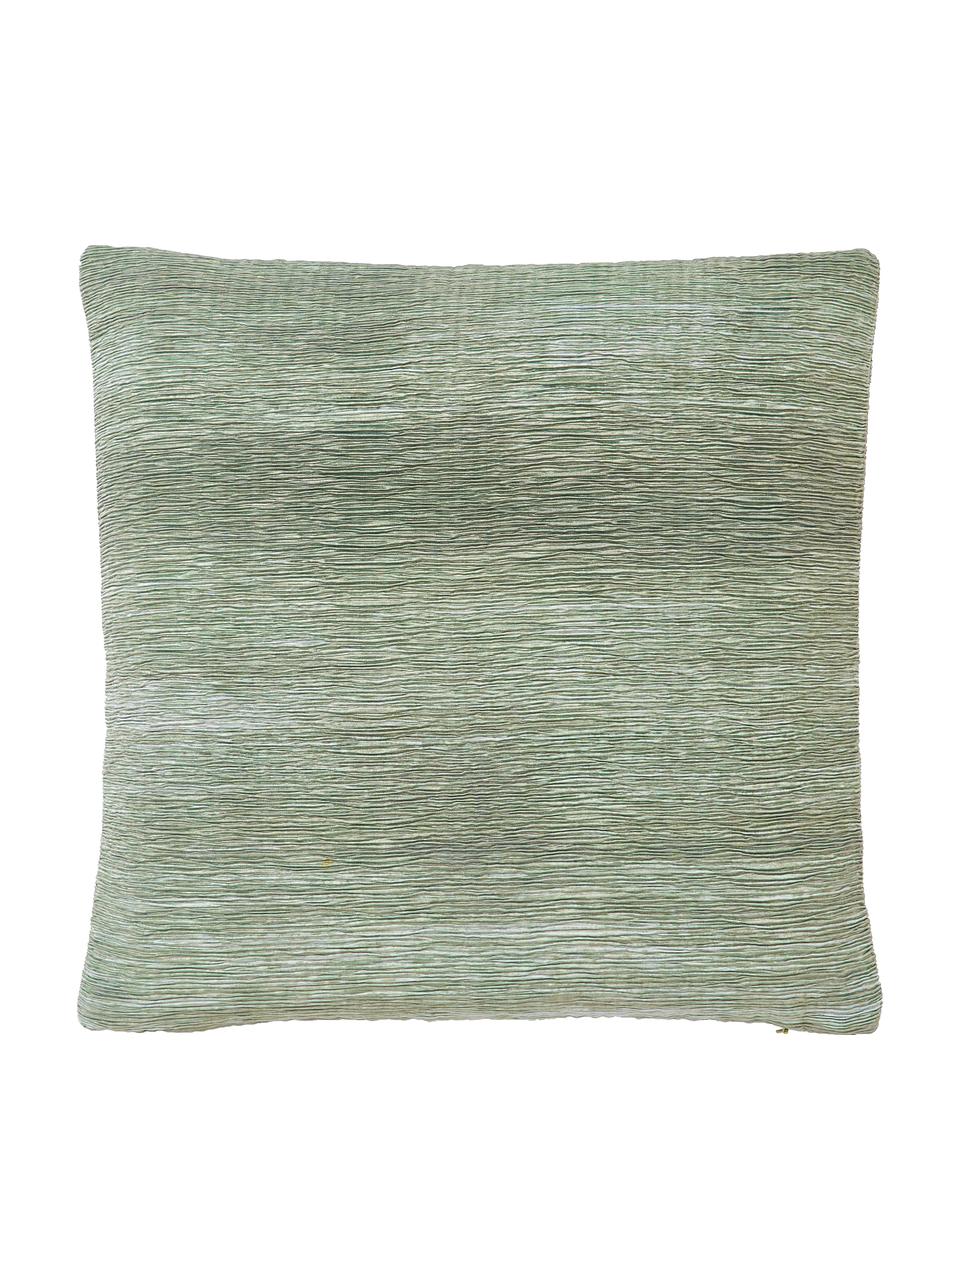 Kussenhoes Aline met gestructureerde oppervlak, 100% polyester, Groen, B 45 x L 45 cm